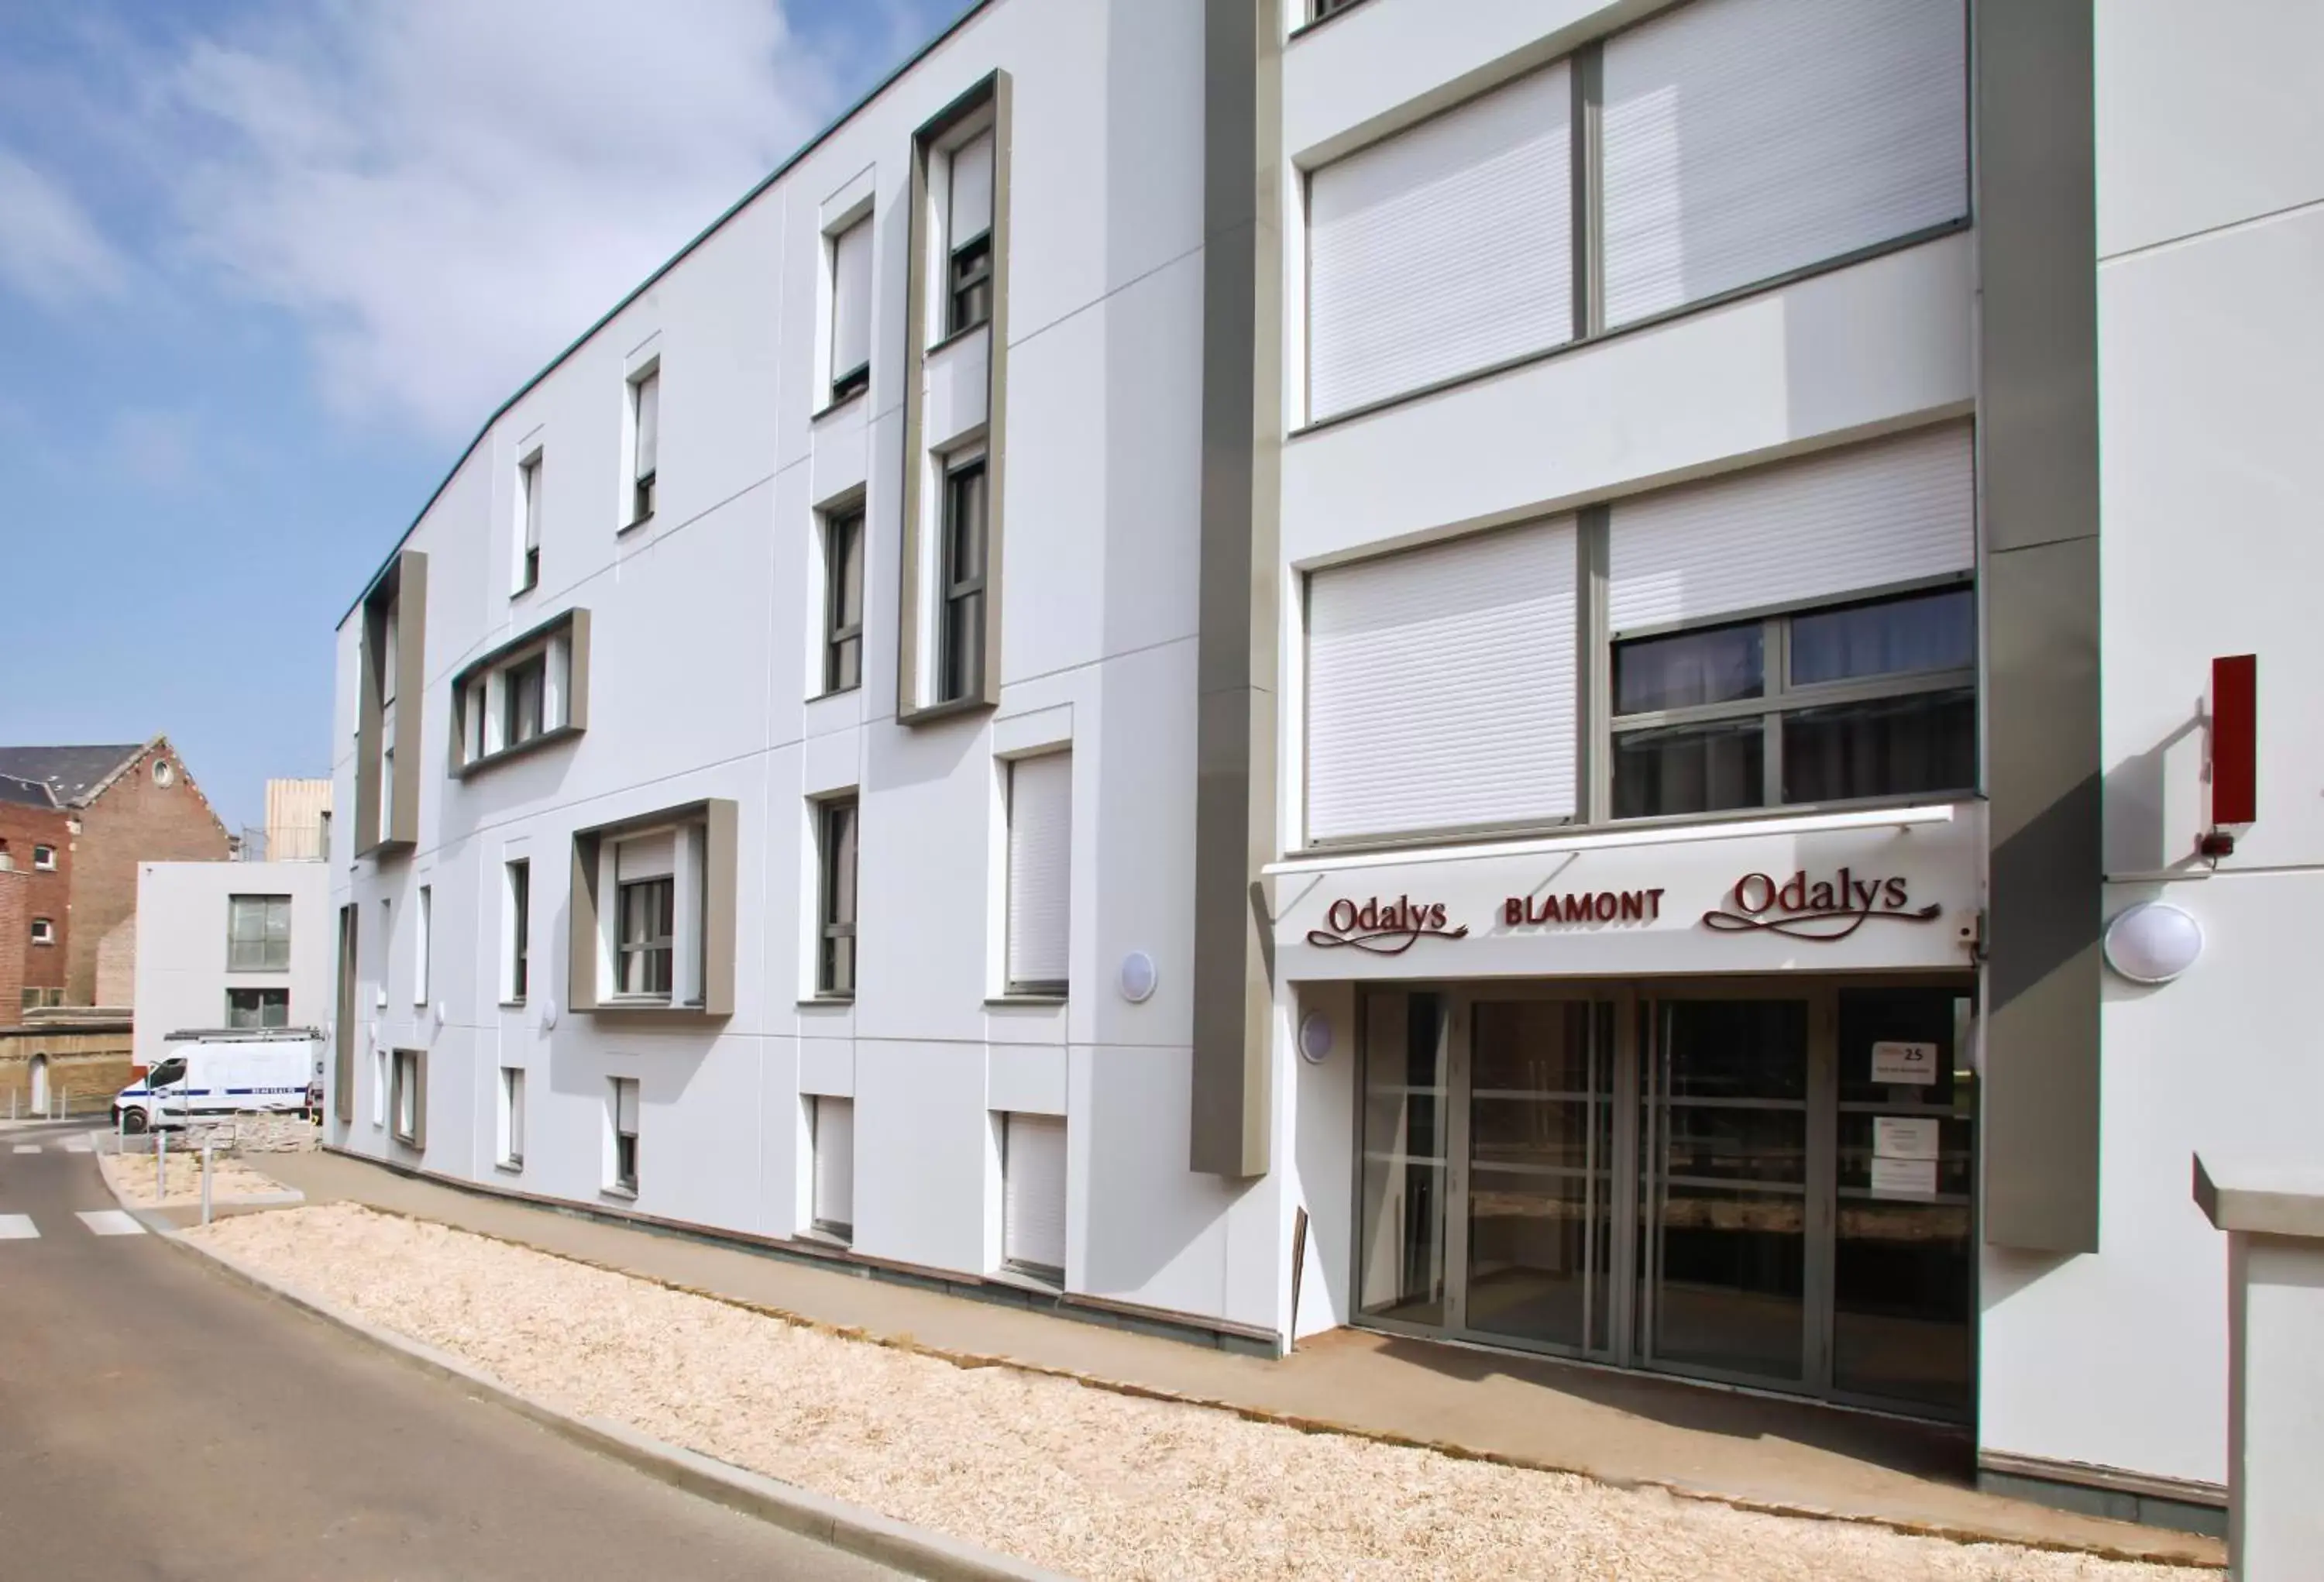 Facade/entrance, Property Building in Odalys City Amiens Blamont